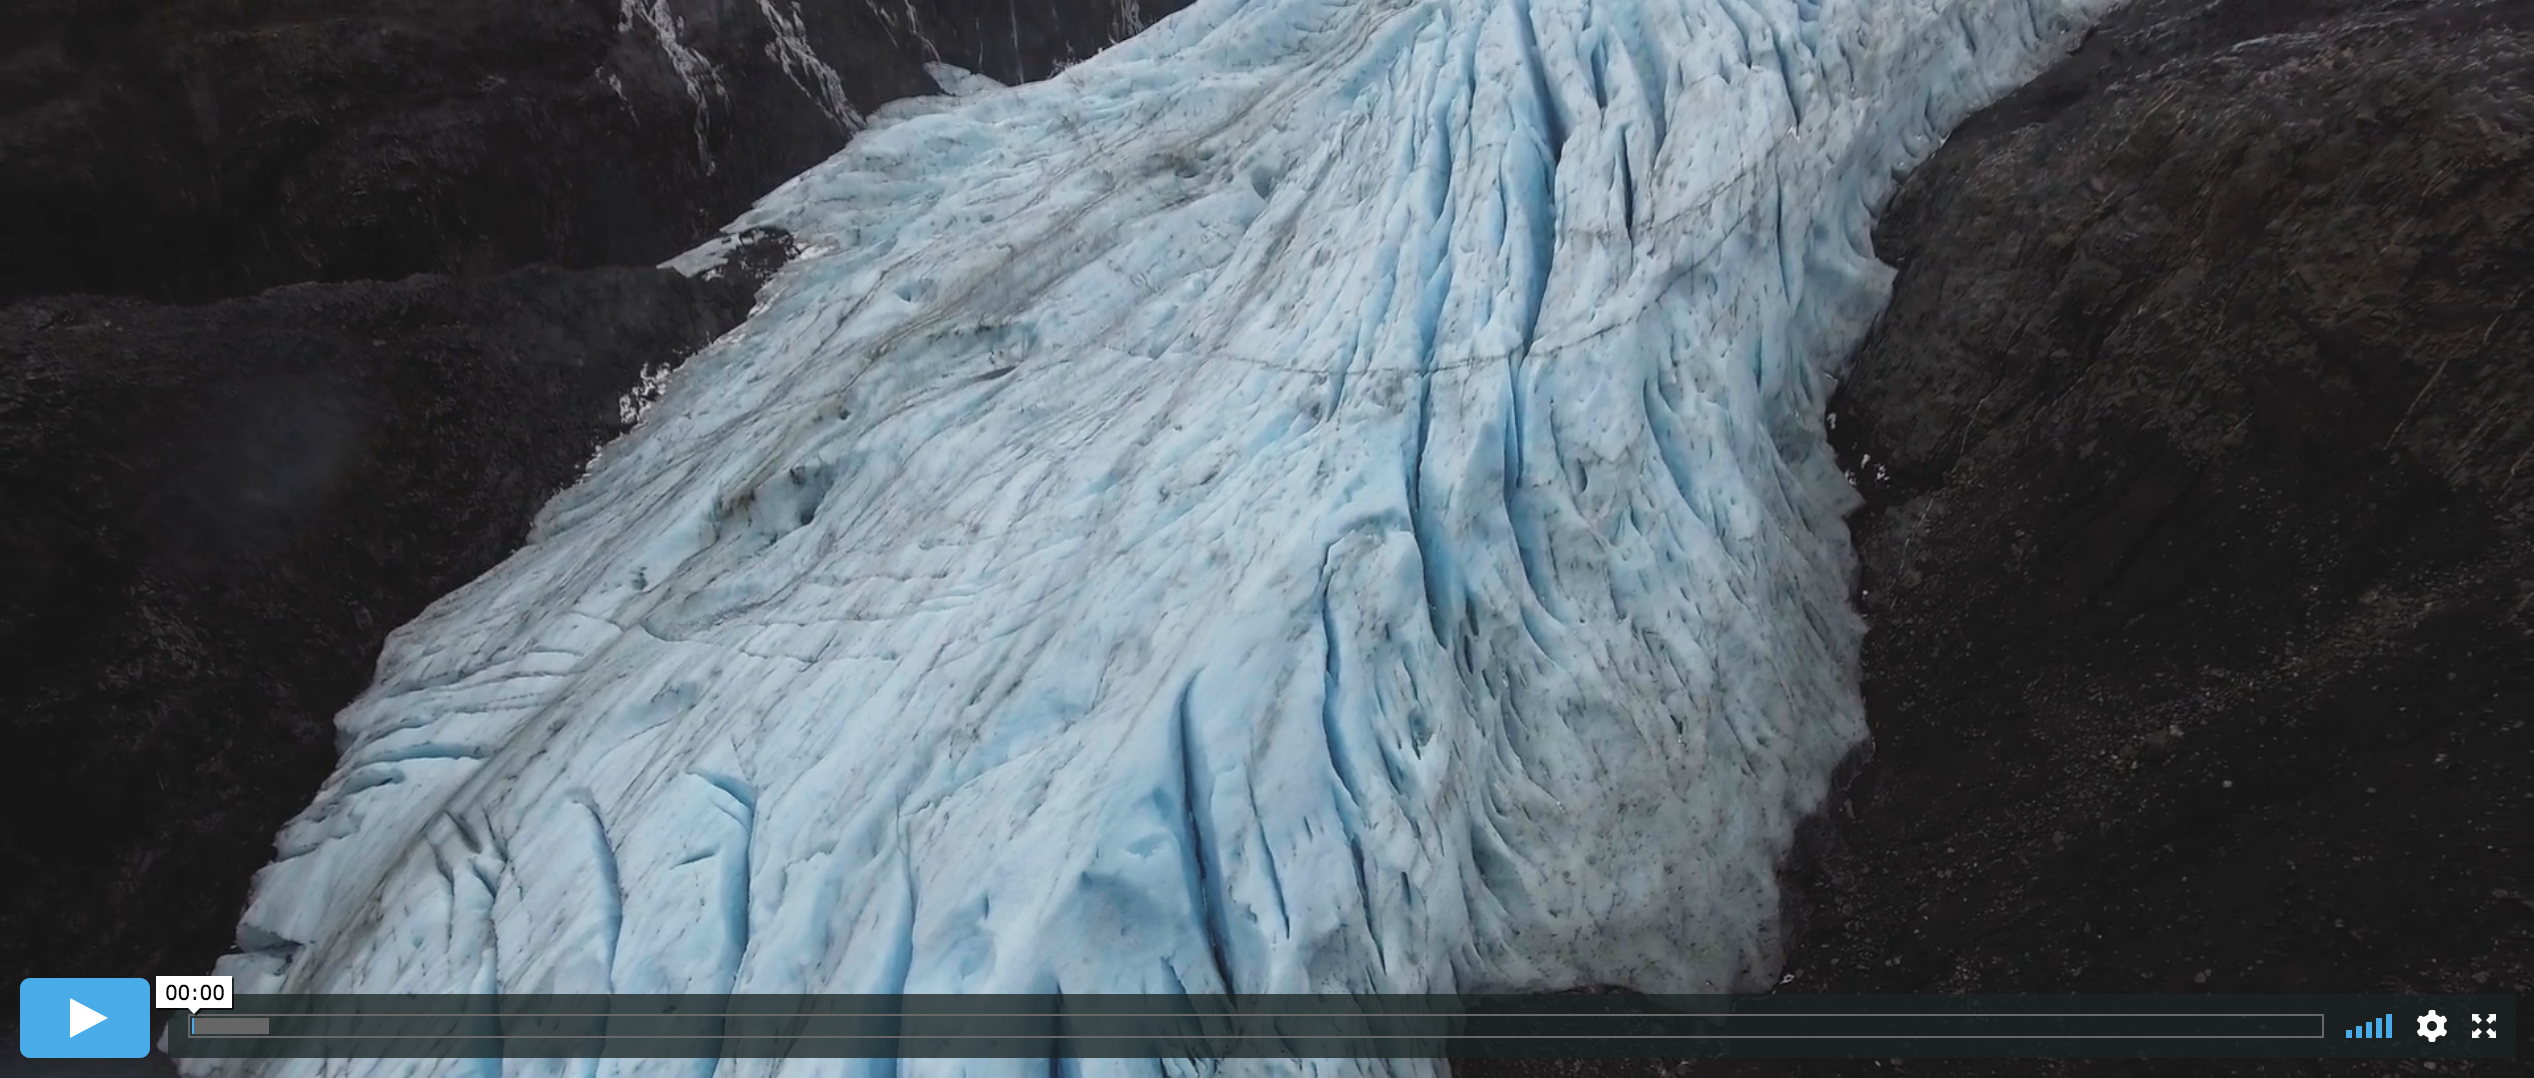 Glacier Exit – A short documentary showing a glacier’s retreat